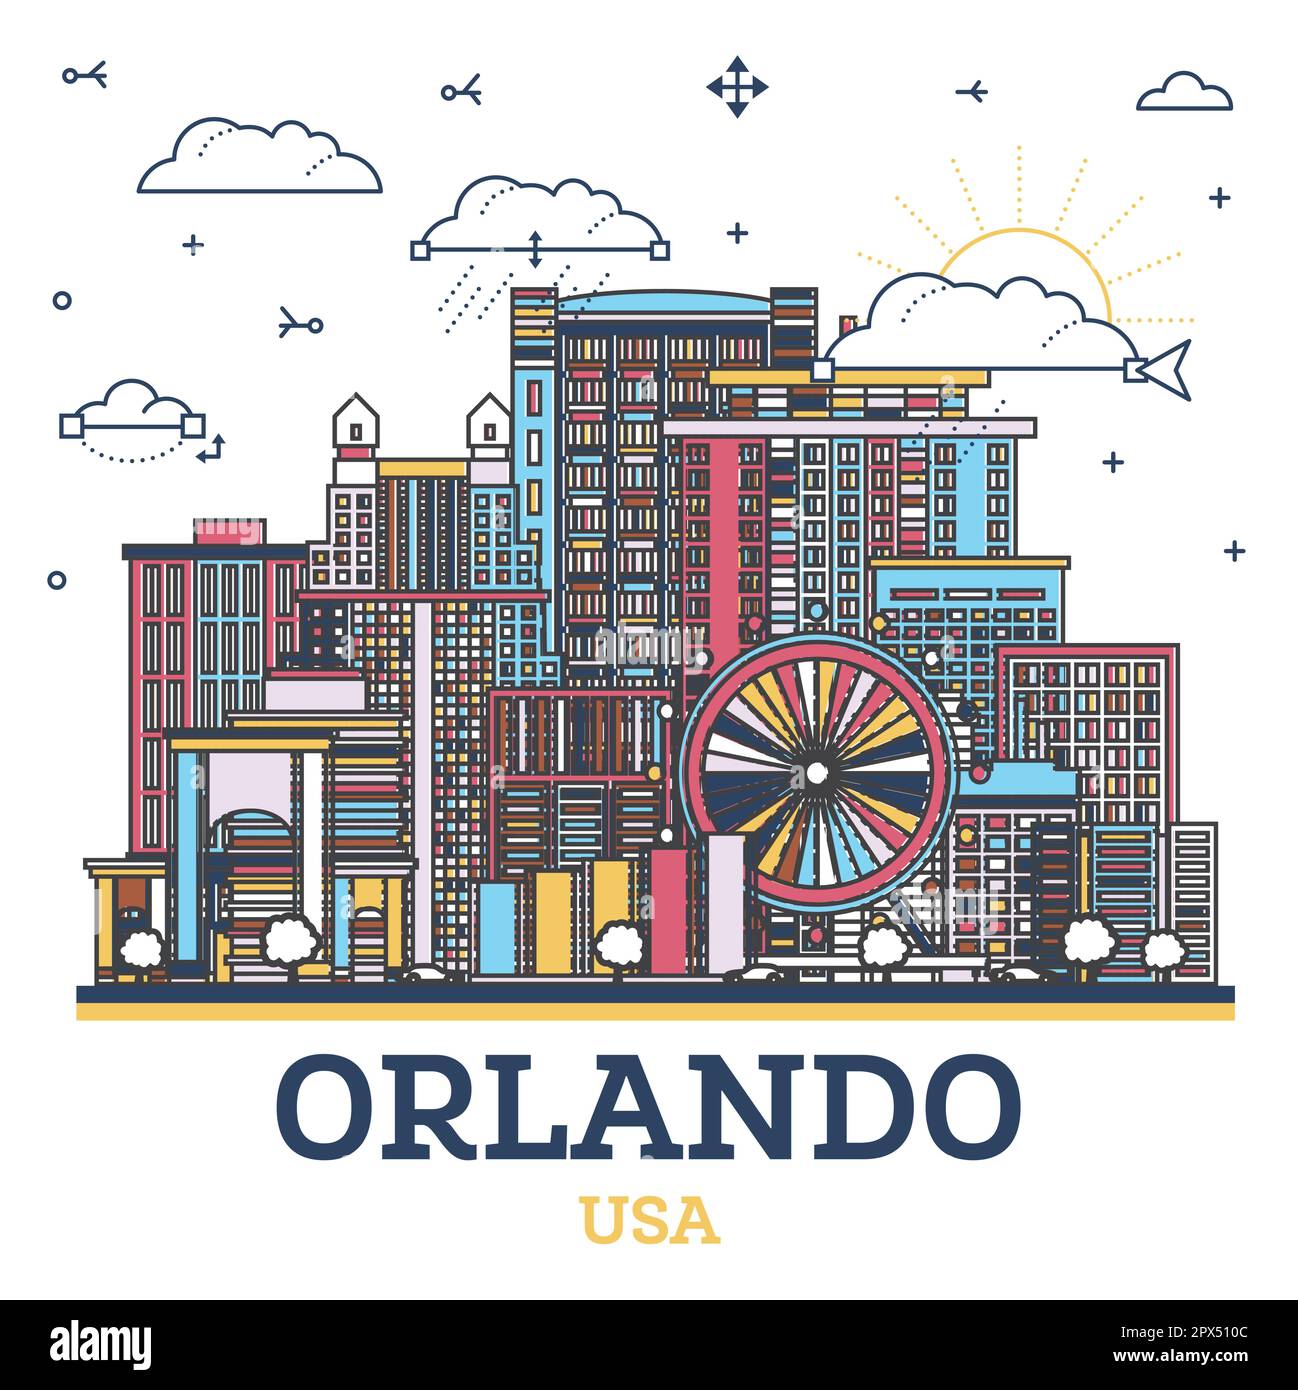 Umreißen Sie die Skyline von Orlando Florida City mit farbigen modernen und historischen Gebäuden, die auf Weiß isoliert sind. Vektorgrafik. Orlando USA Stadtbild. Stock Vektor